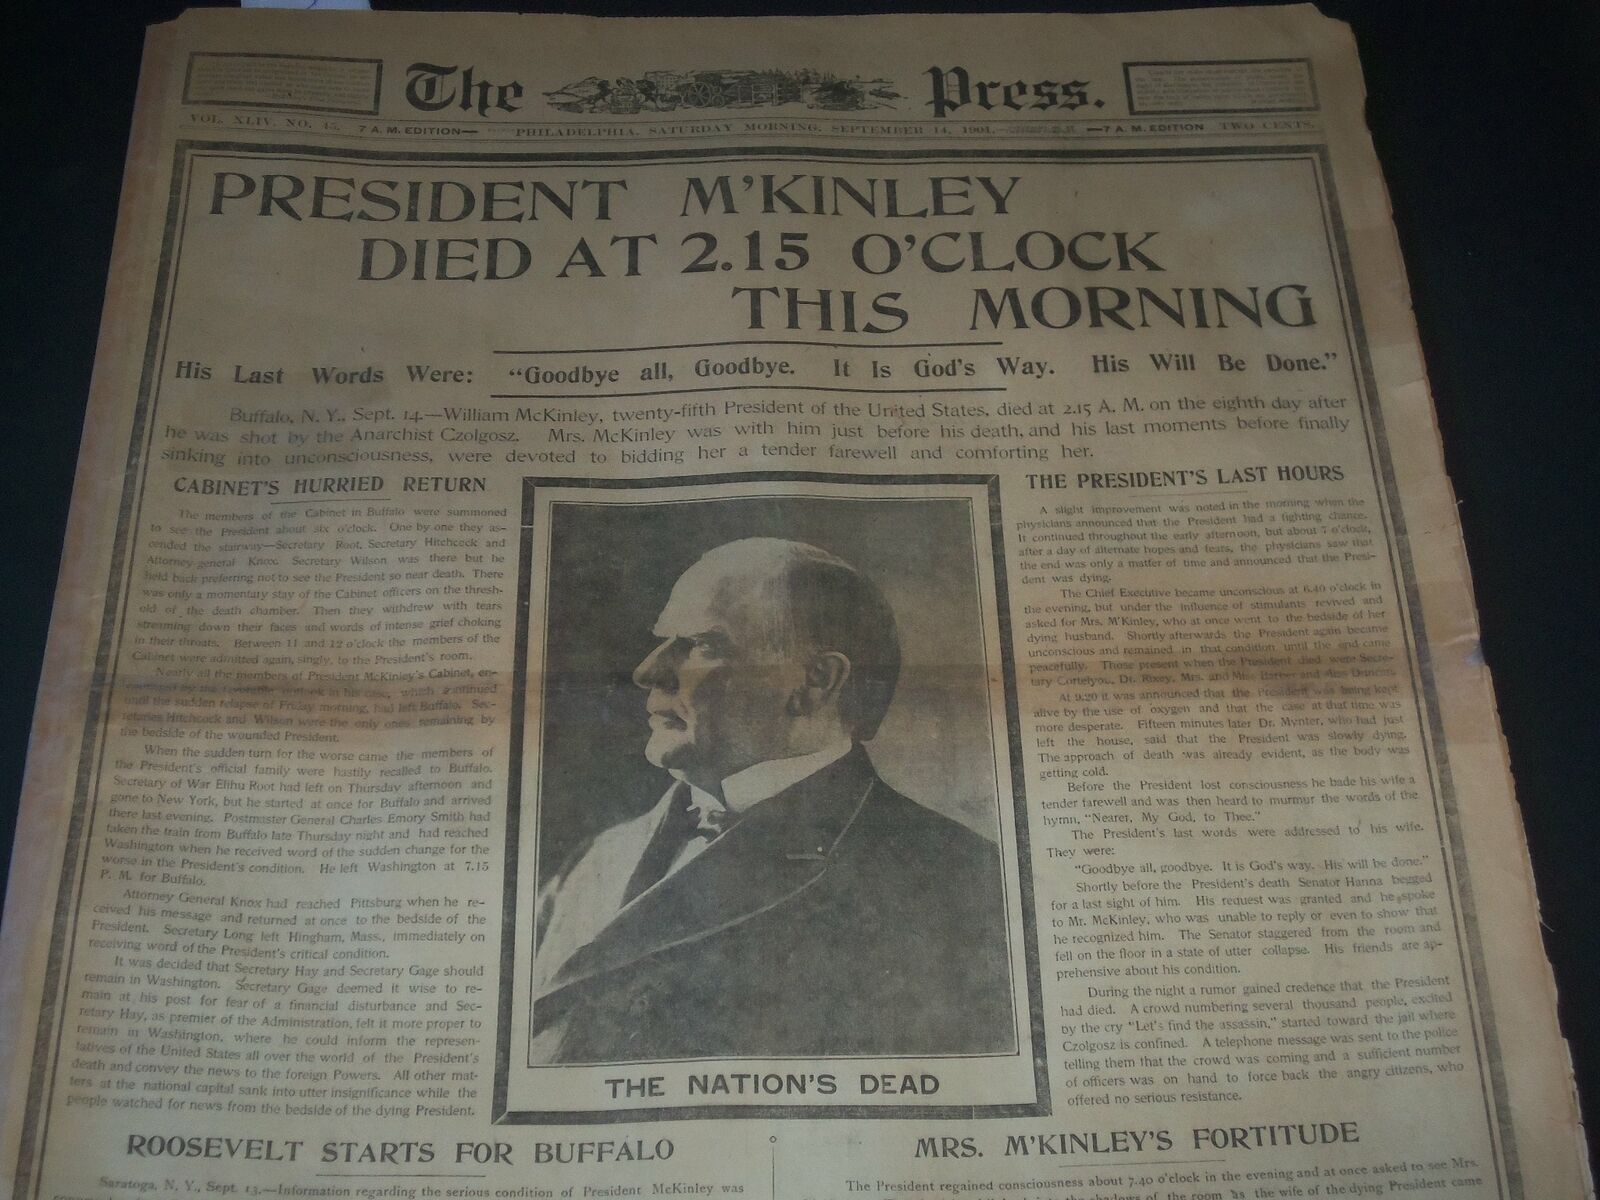 1901 SEPT 14 PHILADELPHIA PRESS NEWSPAPER - PRESIDENT M'KINLEY DIED - NT 7335